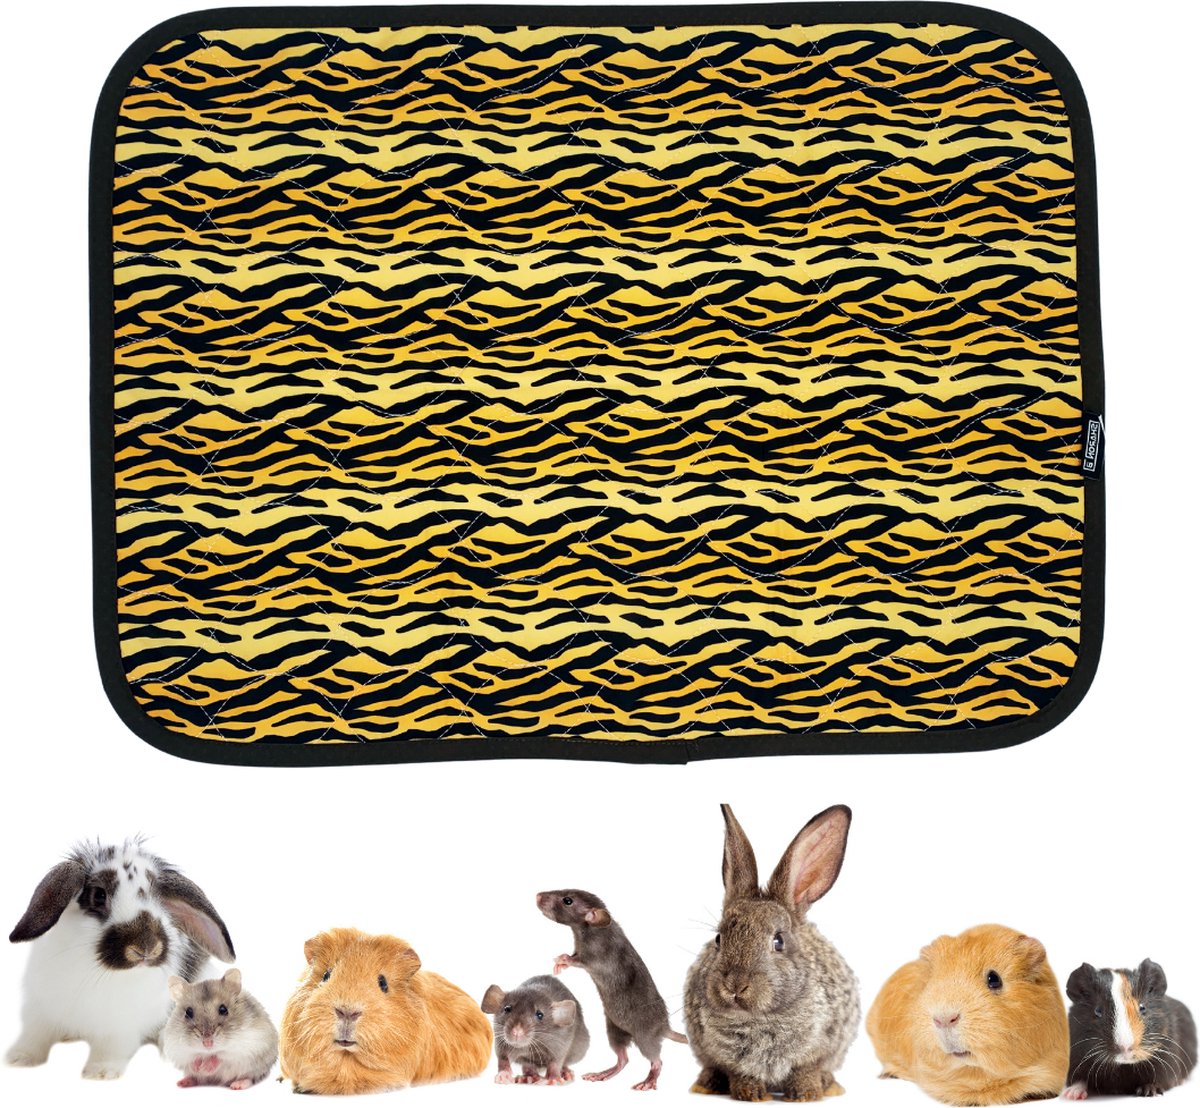 Strooiselmat Voor knaagdieren - Fleece - 76x81 cm - Tijgerprint - Bodembedekking - Voor konijn, cavia, muis, fret, chinchilla, rat